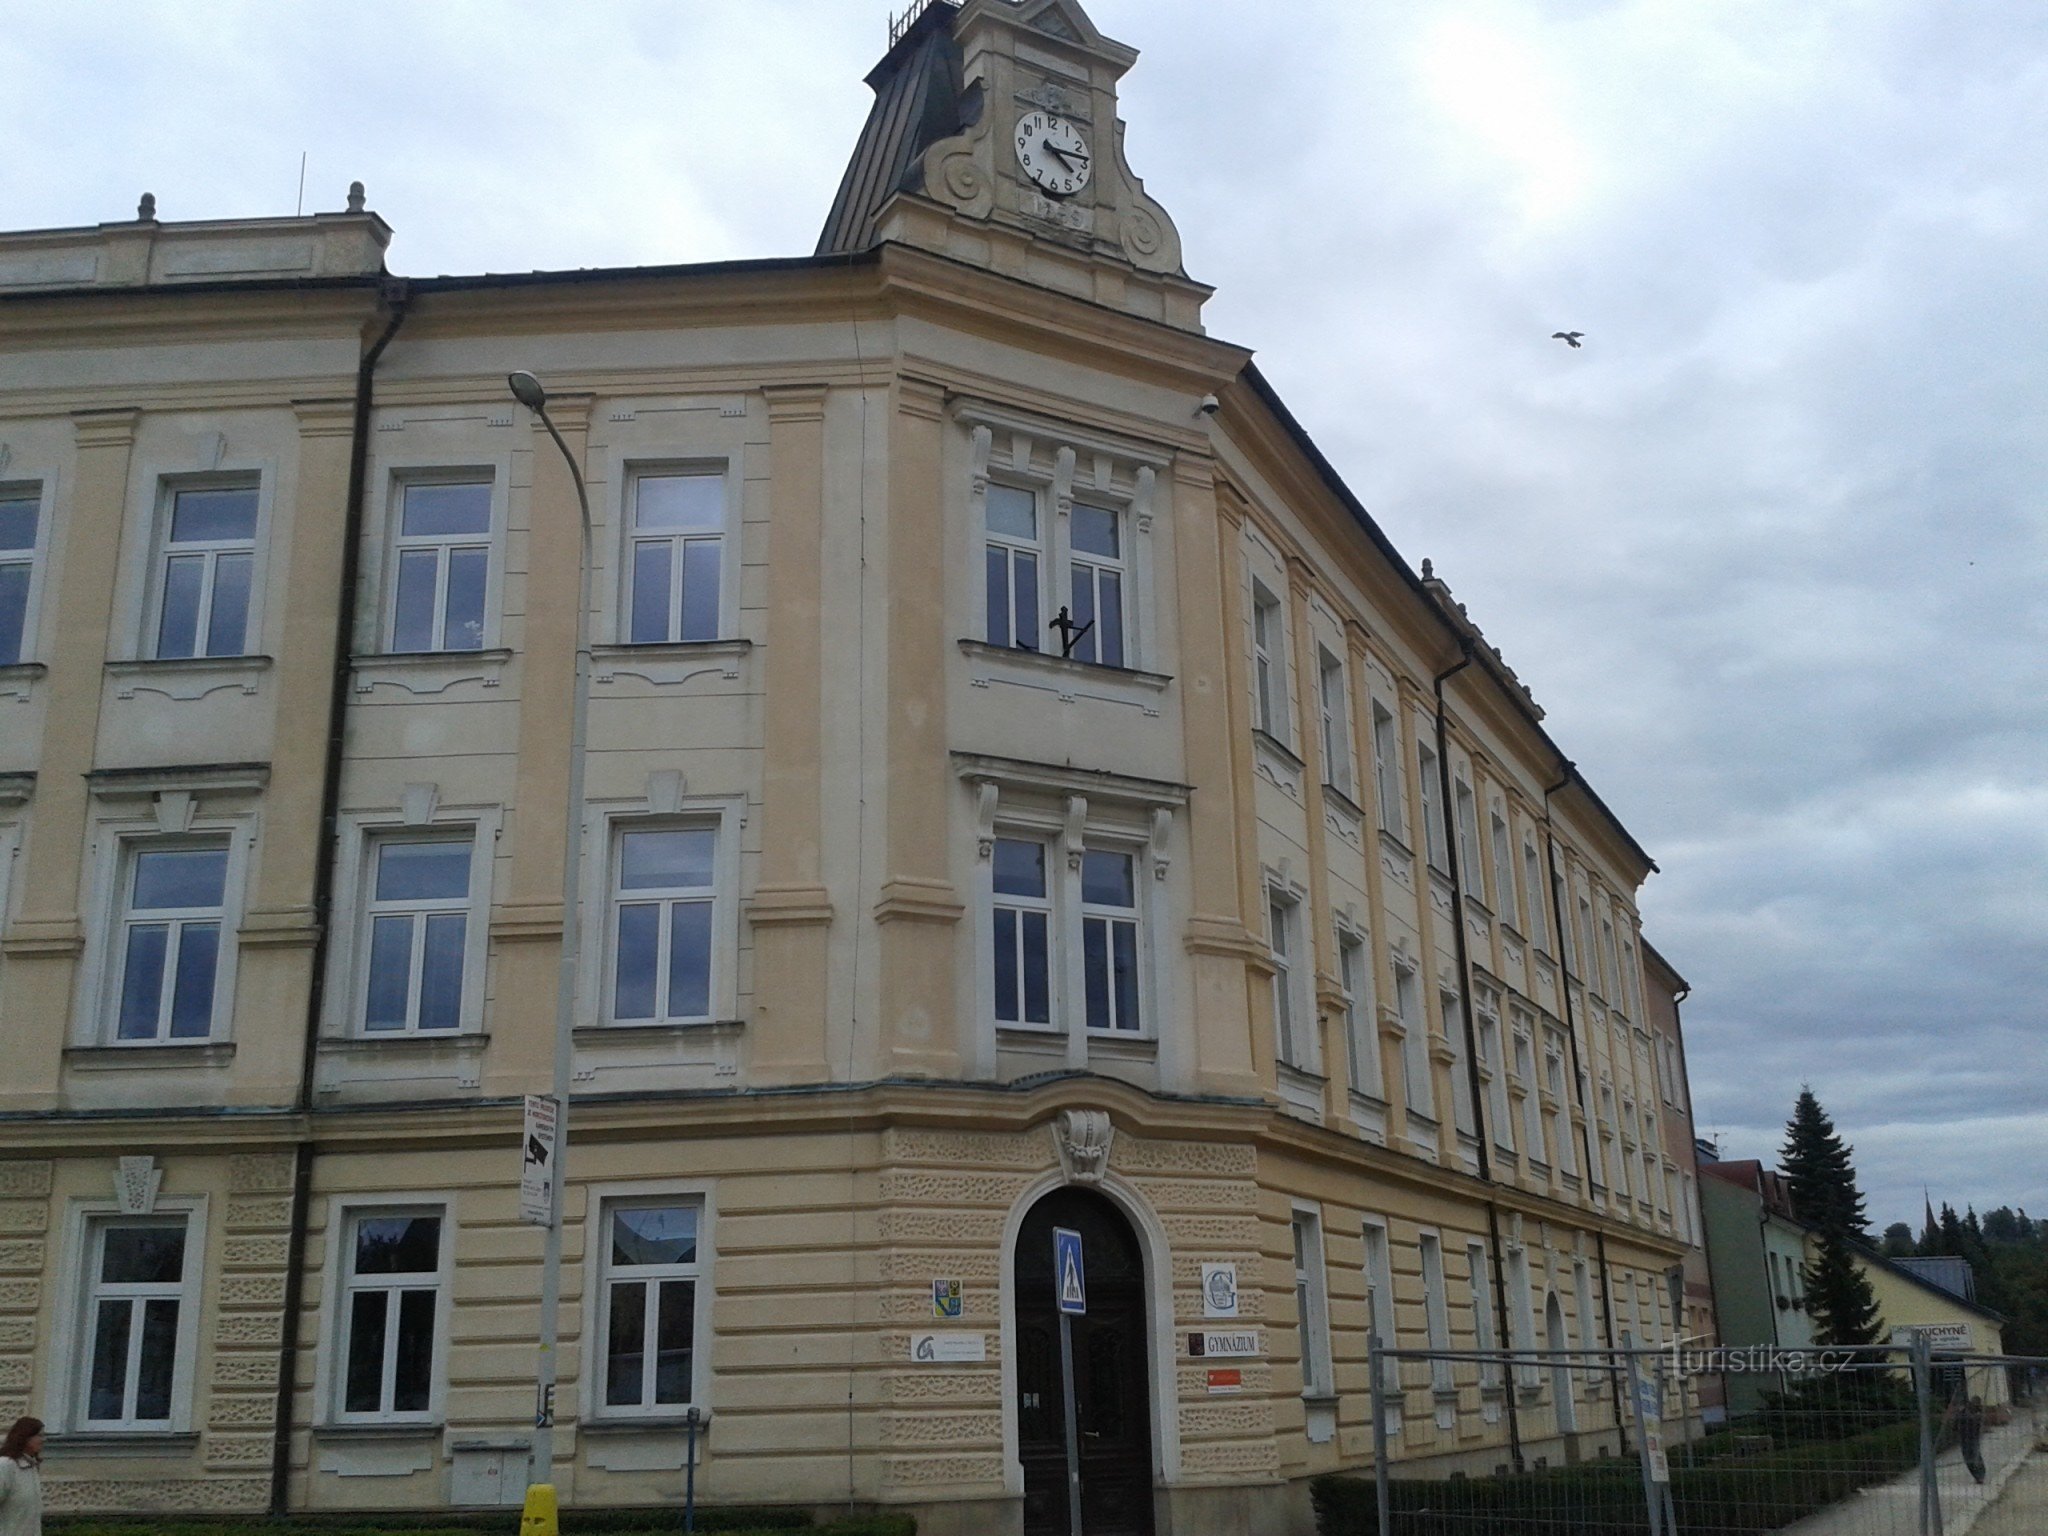 Zábřeh - κτίριο γυμνασίου - το πρώτο και παλαιότερο γυμνάσιο στη βορειοδυτική Μοραβία